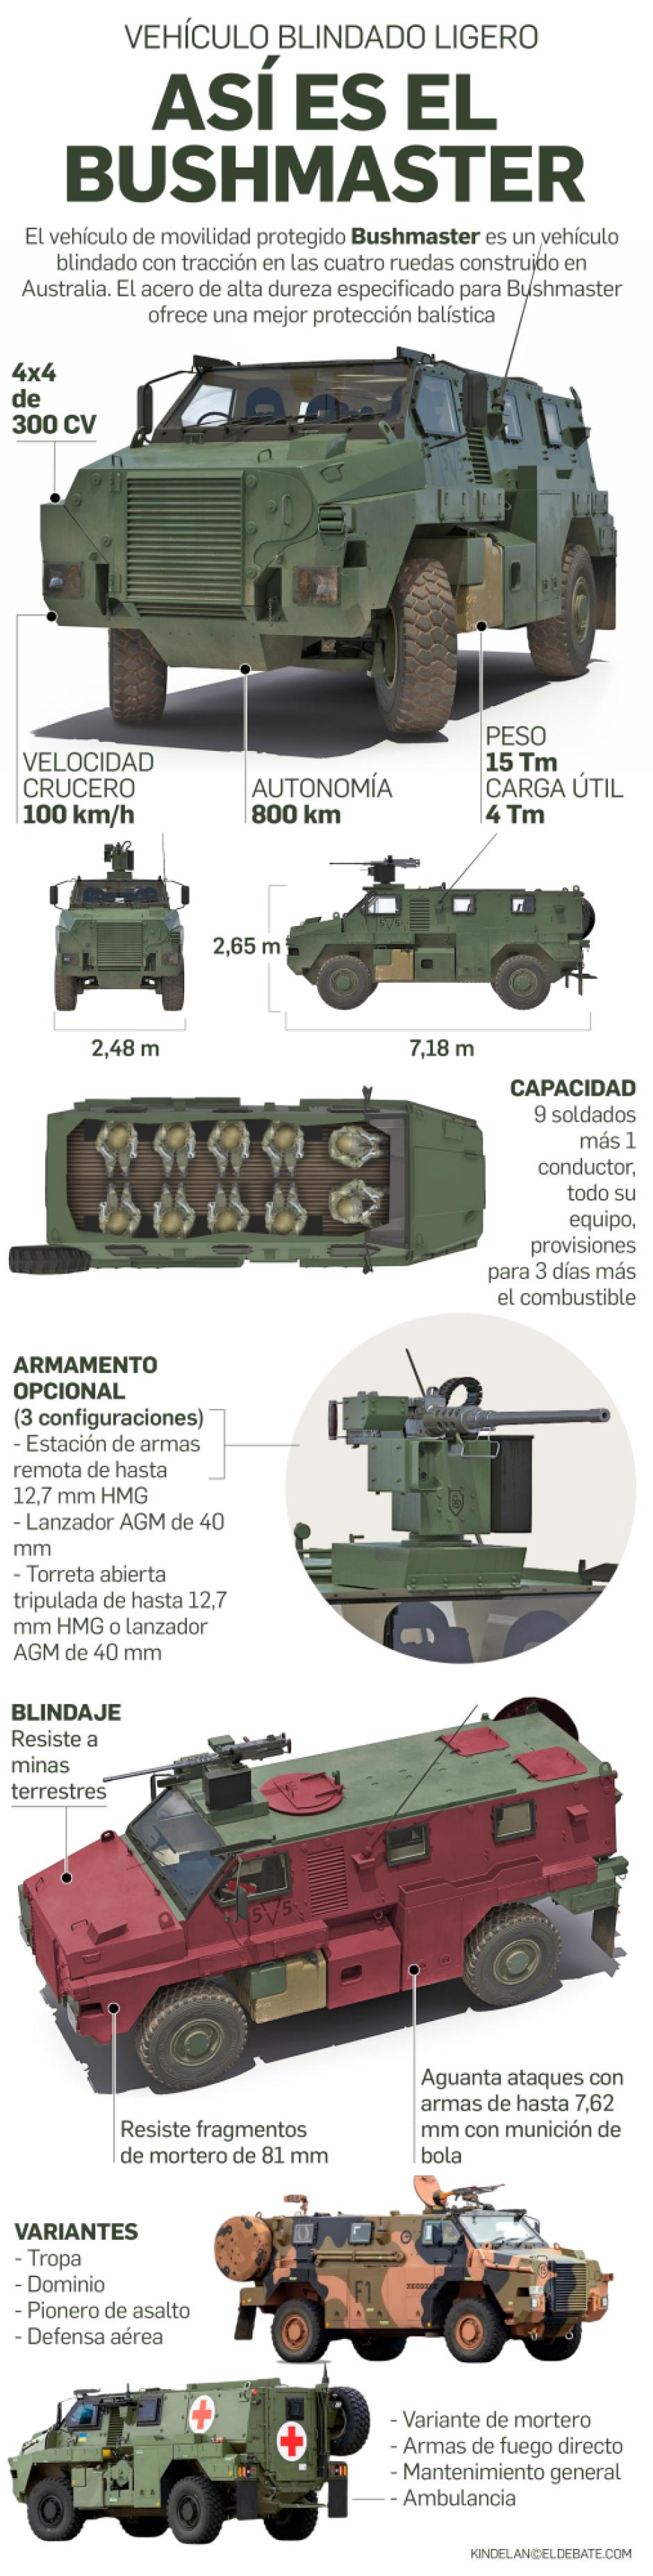 Bushmaster (003)